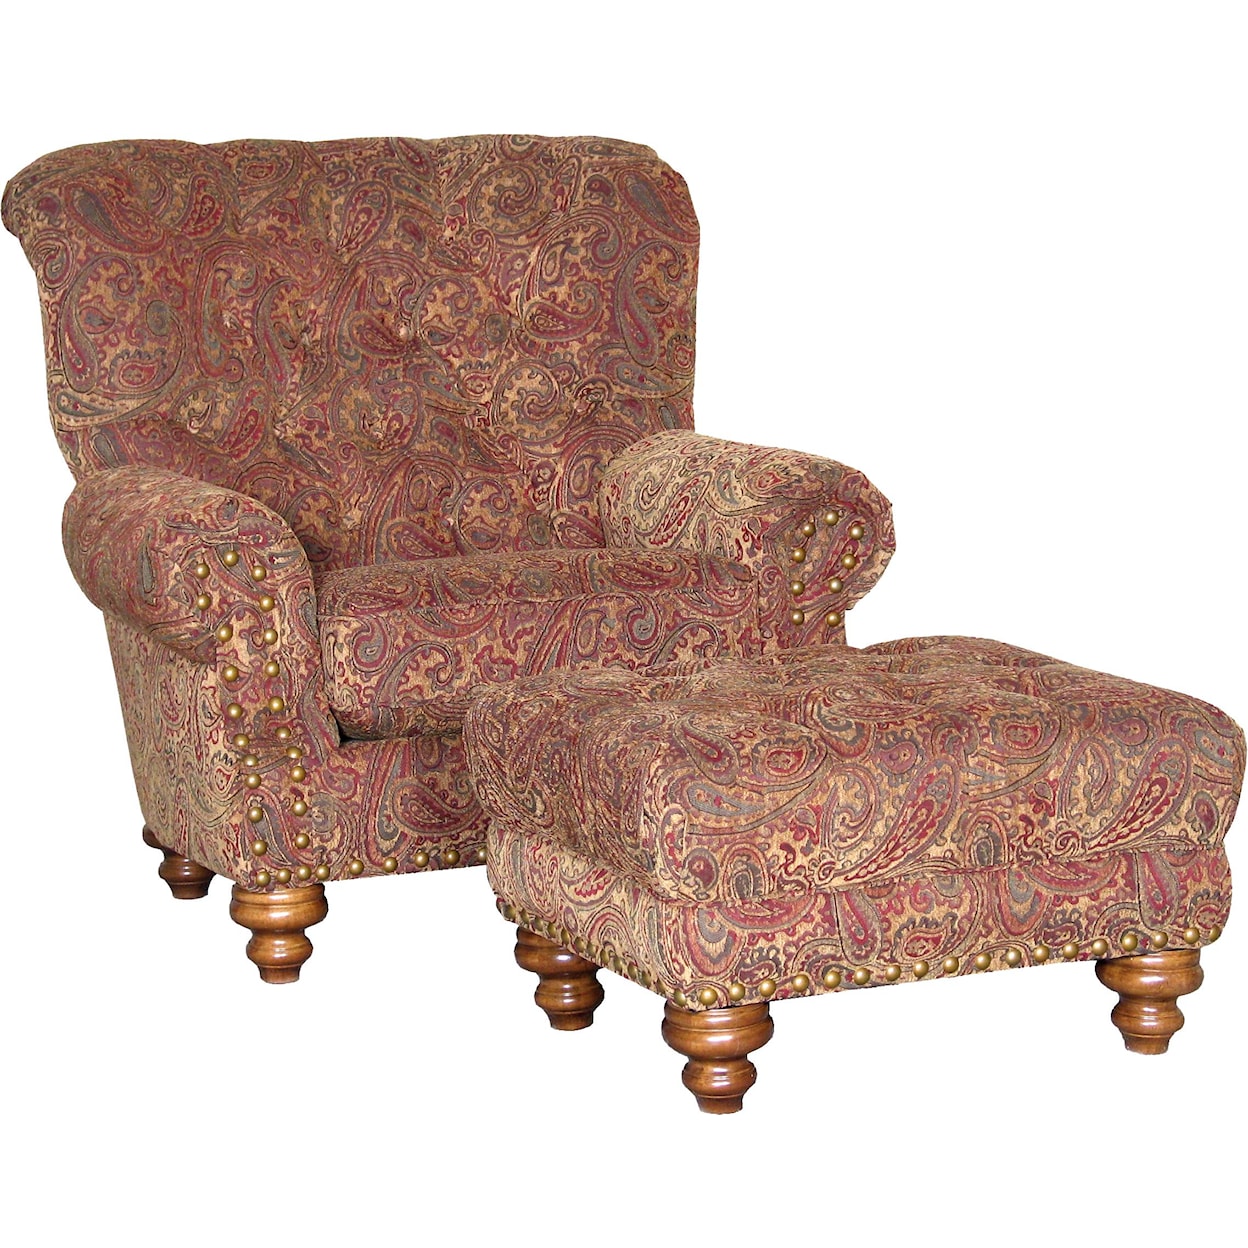 Mayo 9310 Chair and Ottoman